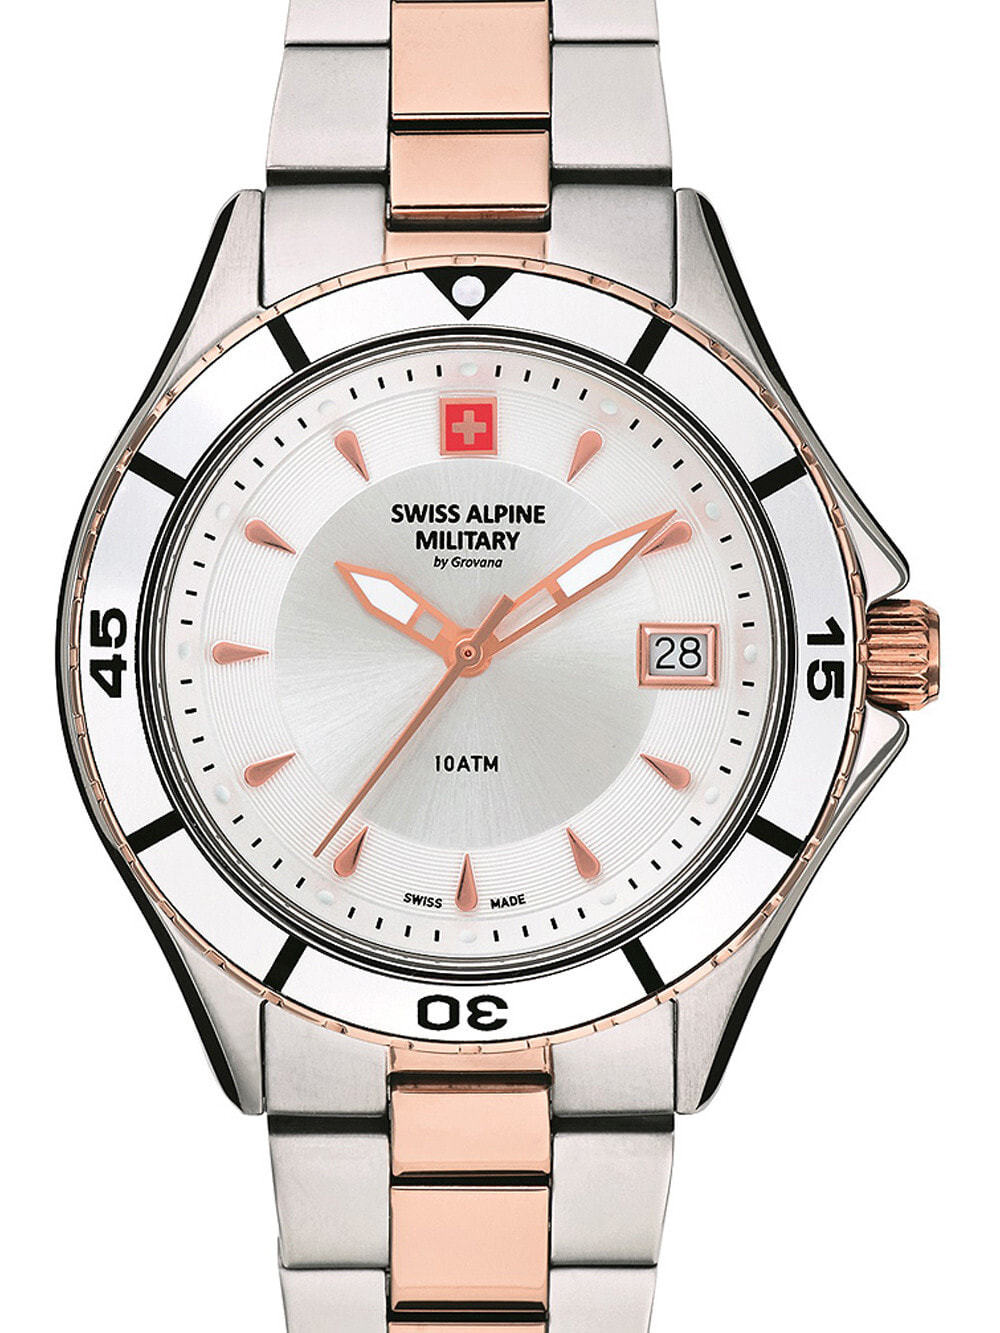 Женские наручные кварцевые часы Swiss Alpine Military браслет из нержавеющей стали, окошко с датой.